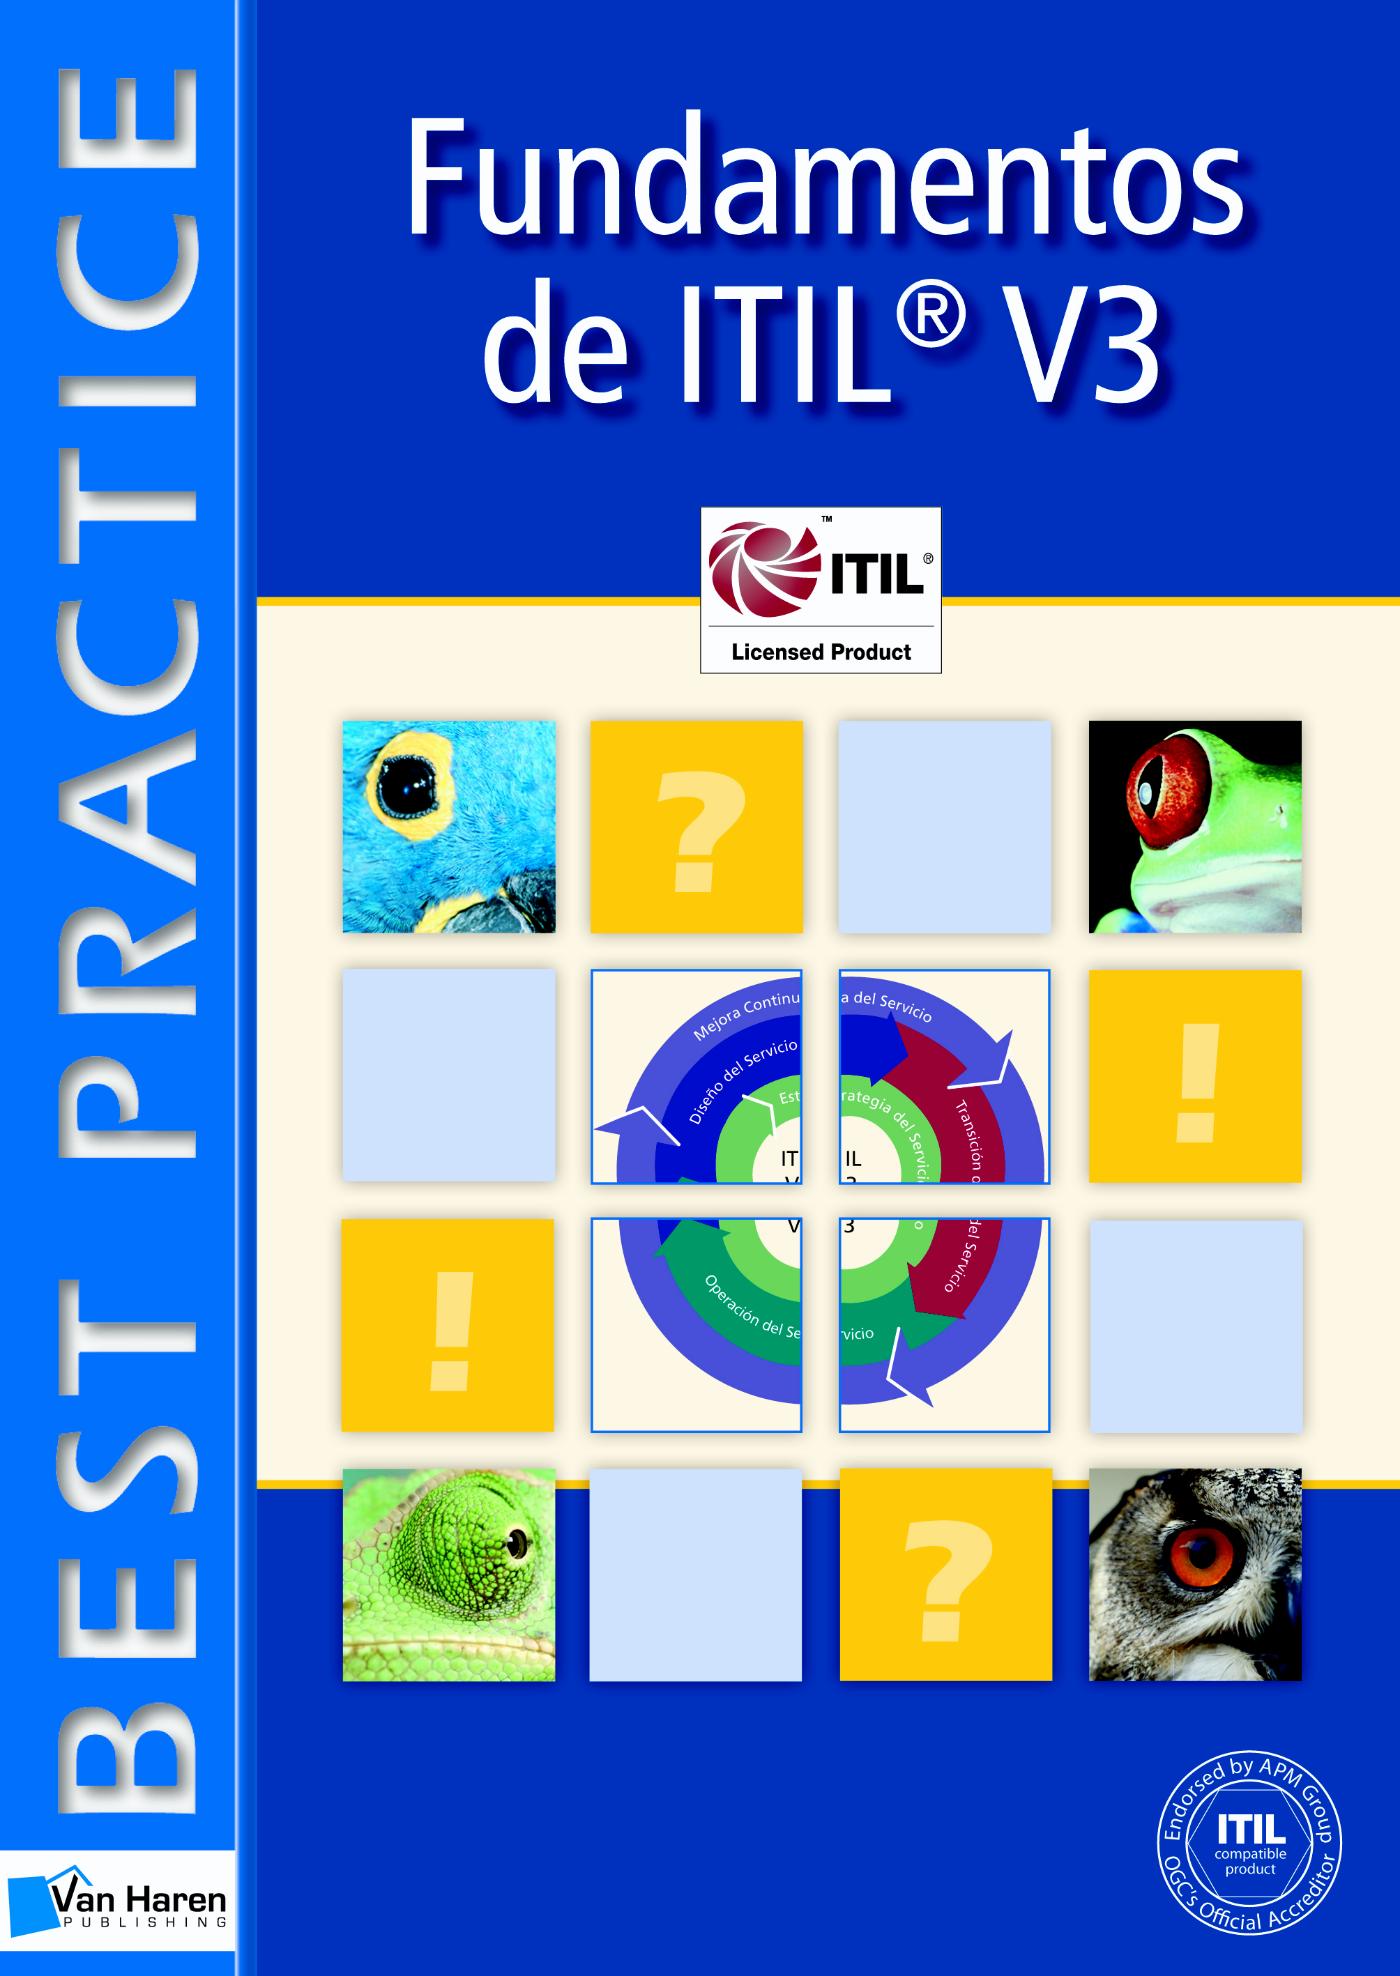 Fundamentos de ITIL ® V3 (Ebook)